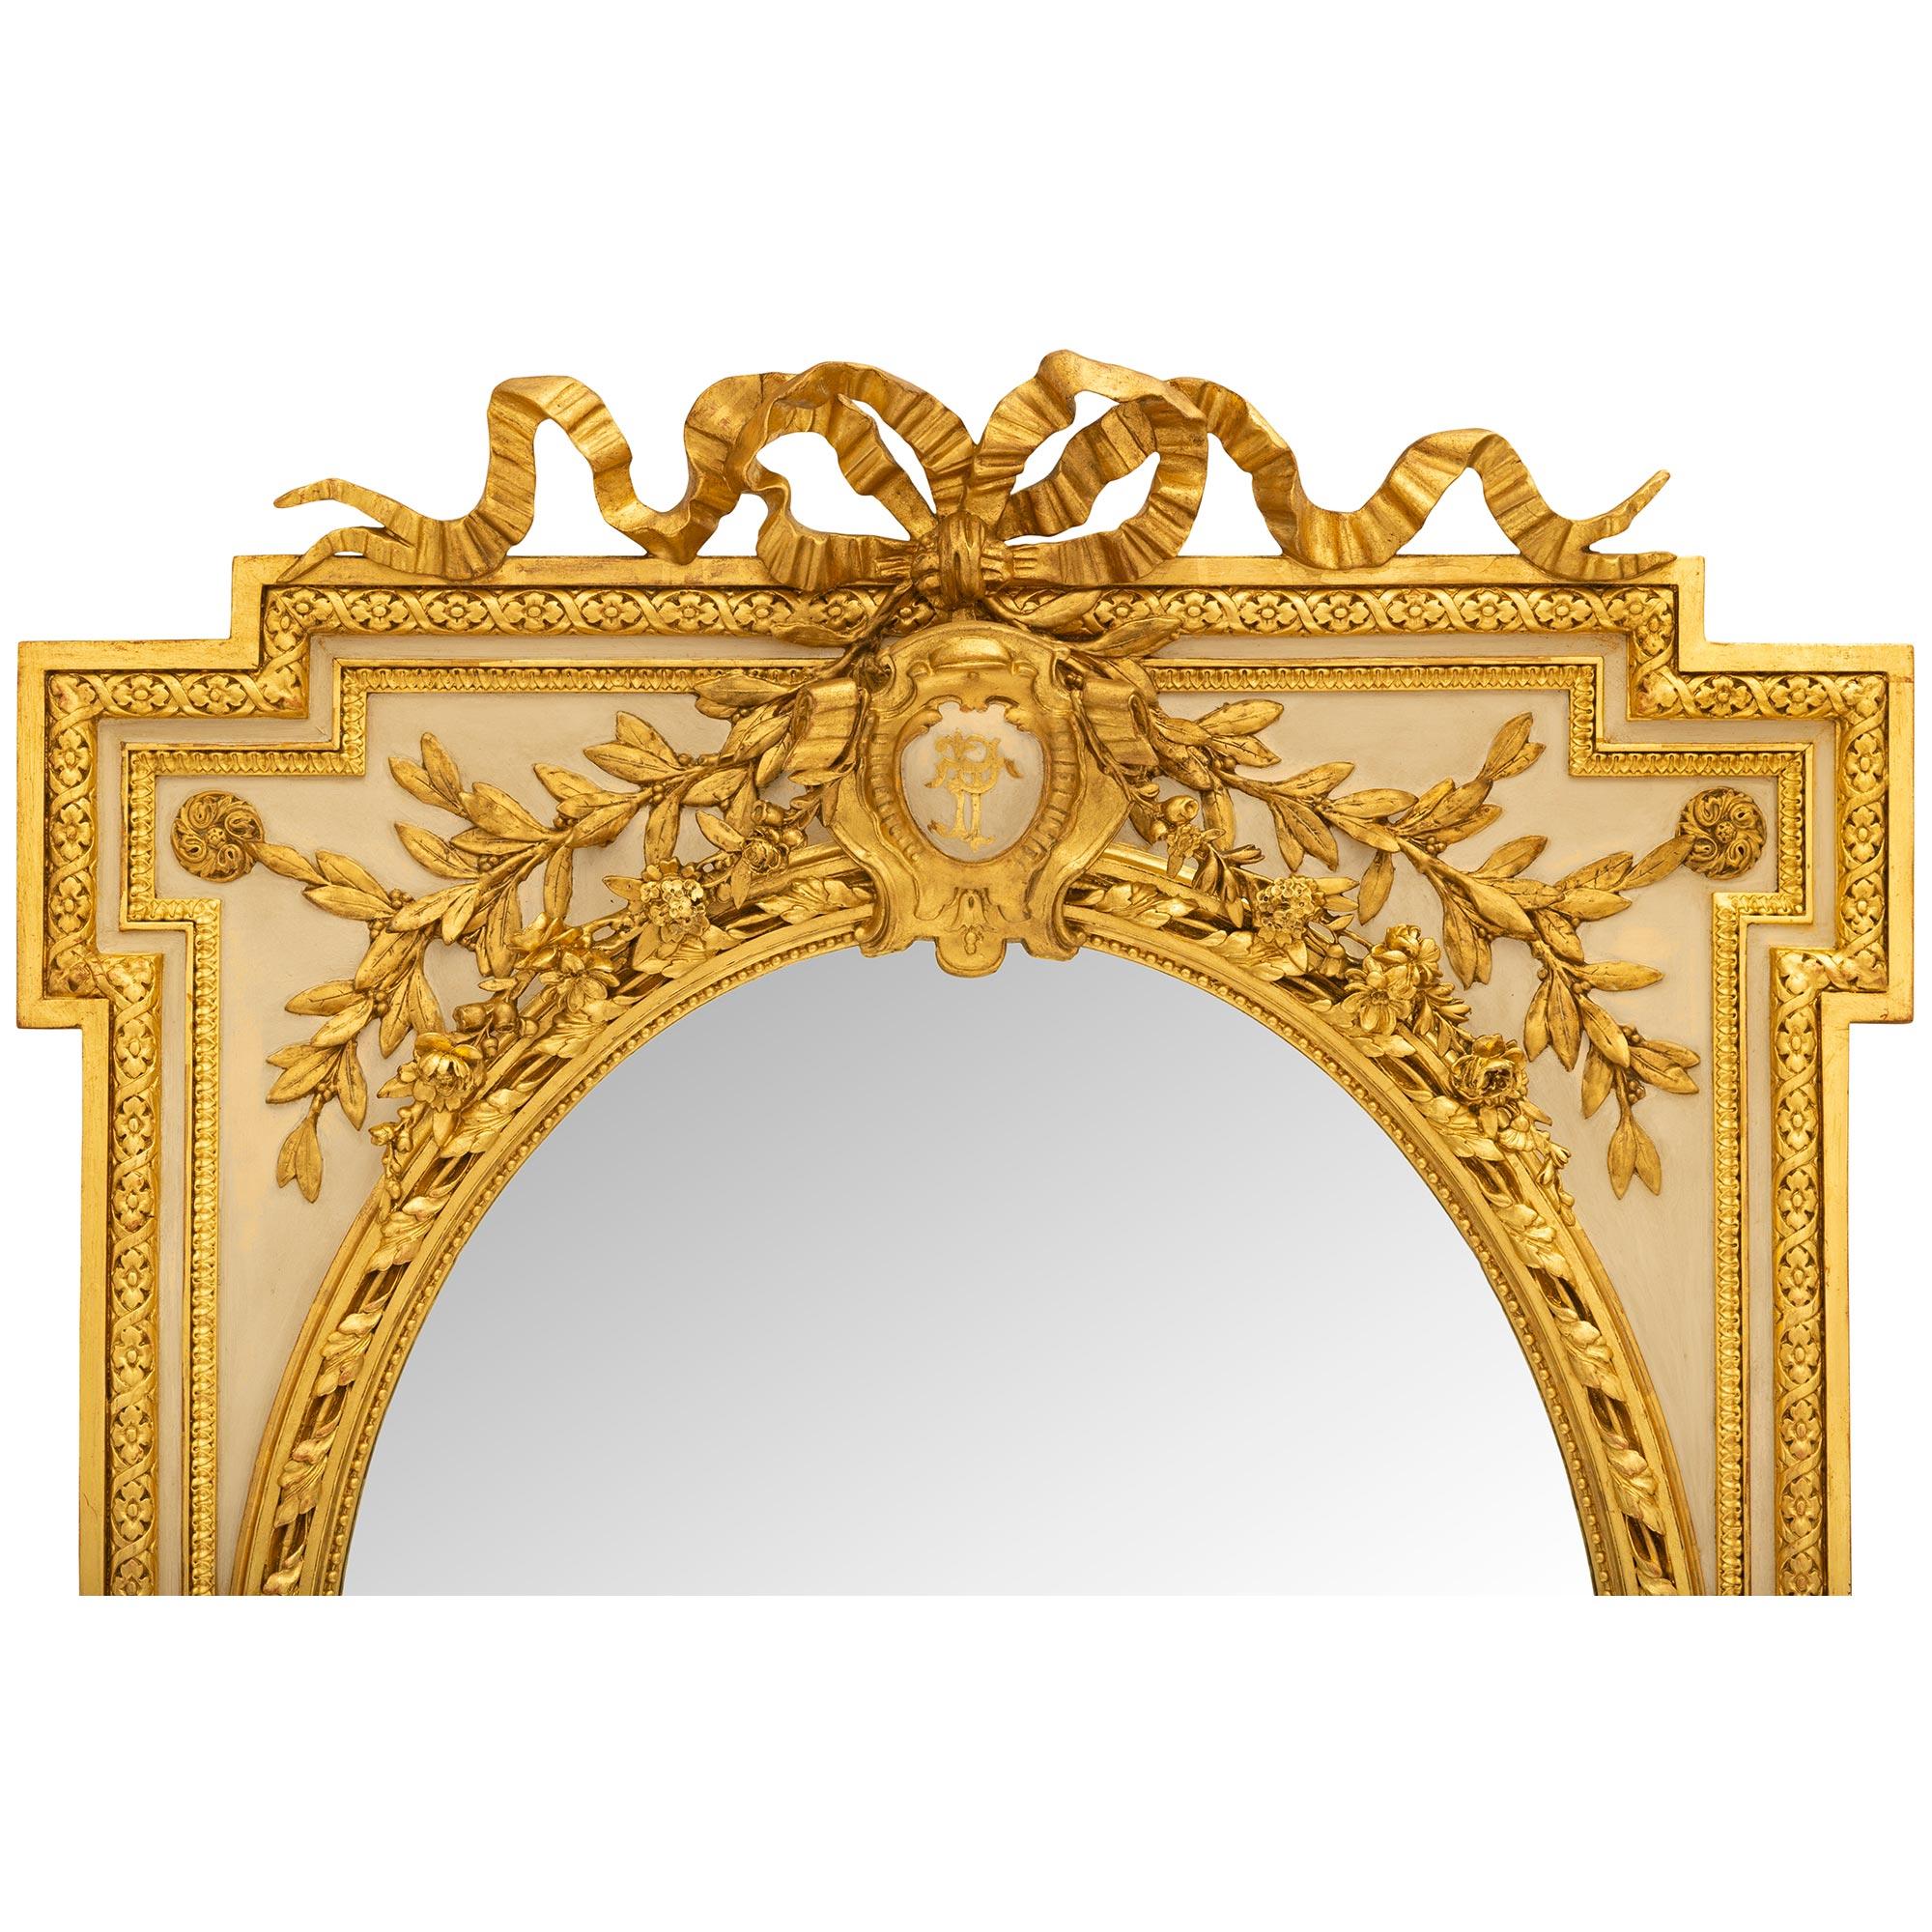 Eine atemberaubende Französisch 19. Jahrhundert Louis XVI st. Patiniert und Giltwood Spiegel. Der originale ovale Spiegel ist von einem perlenbesetzten Innenrahmen mit einem äußeren Band mit gedrehten Blättern eingerahmt. Unter dem ovalen Spiegel